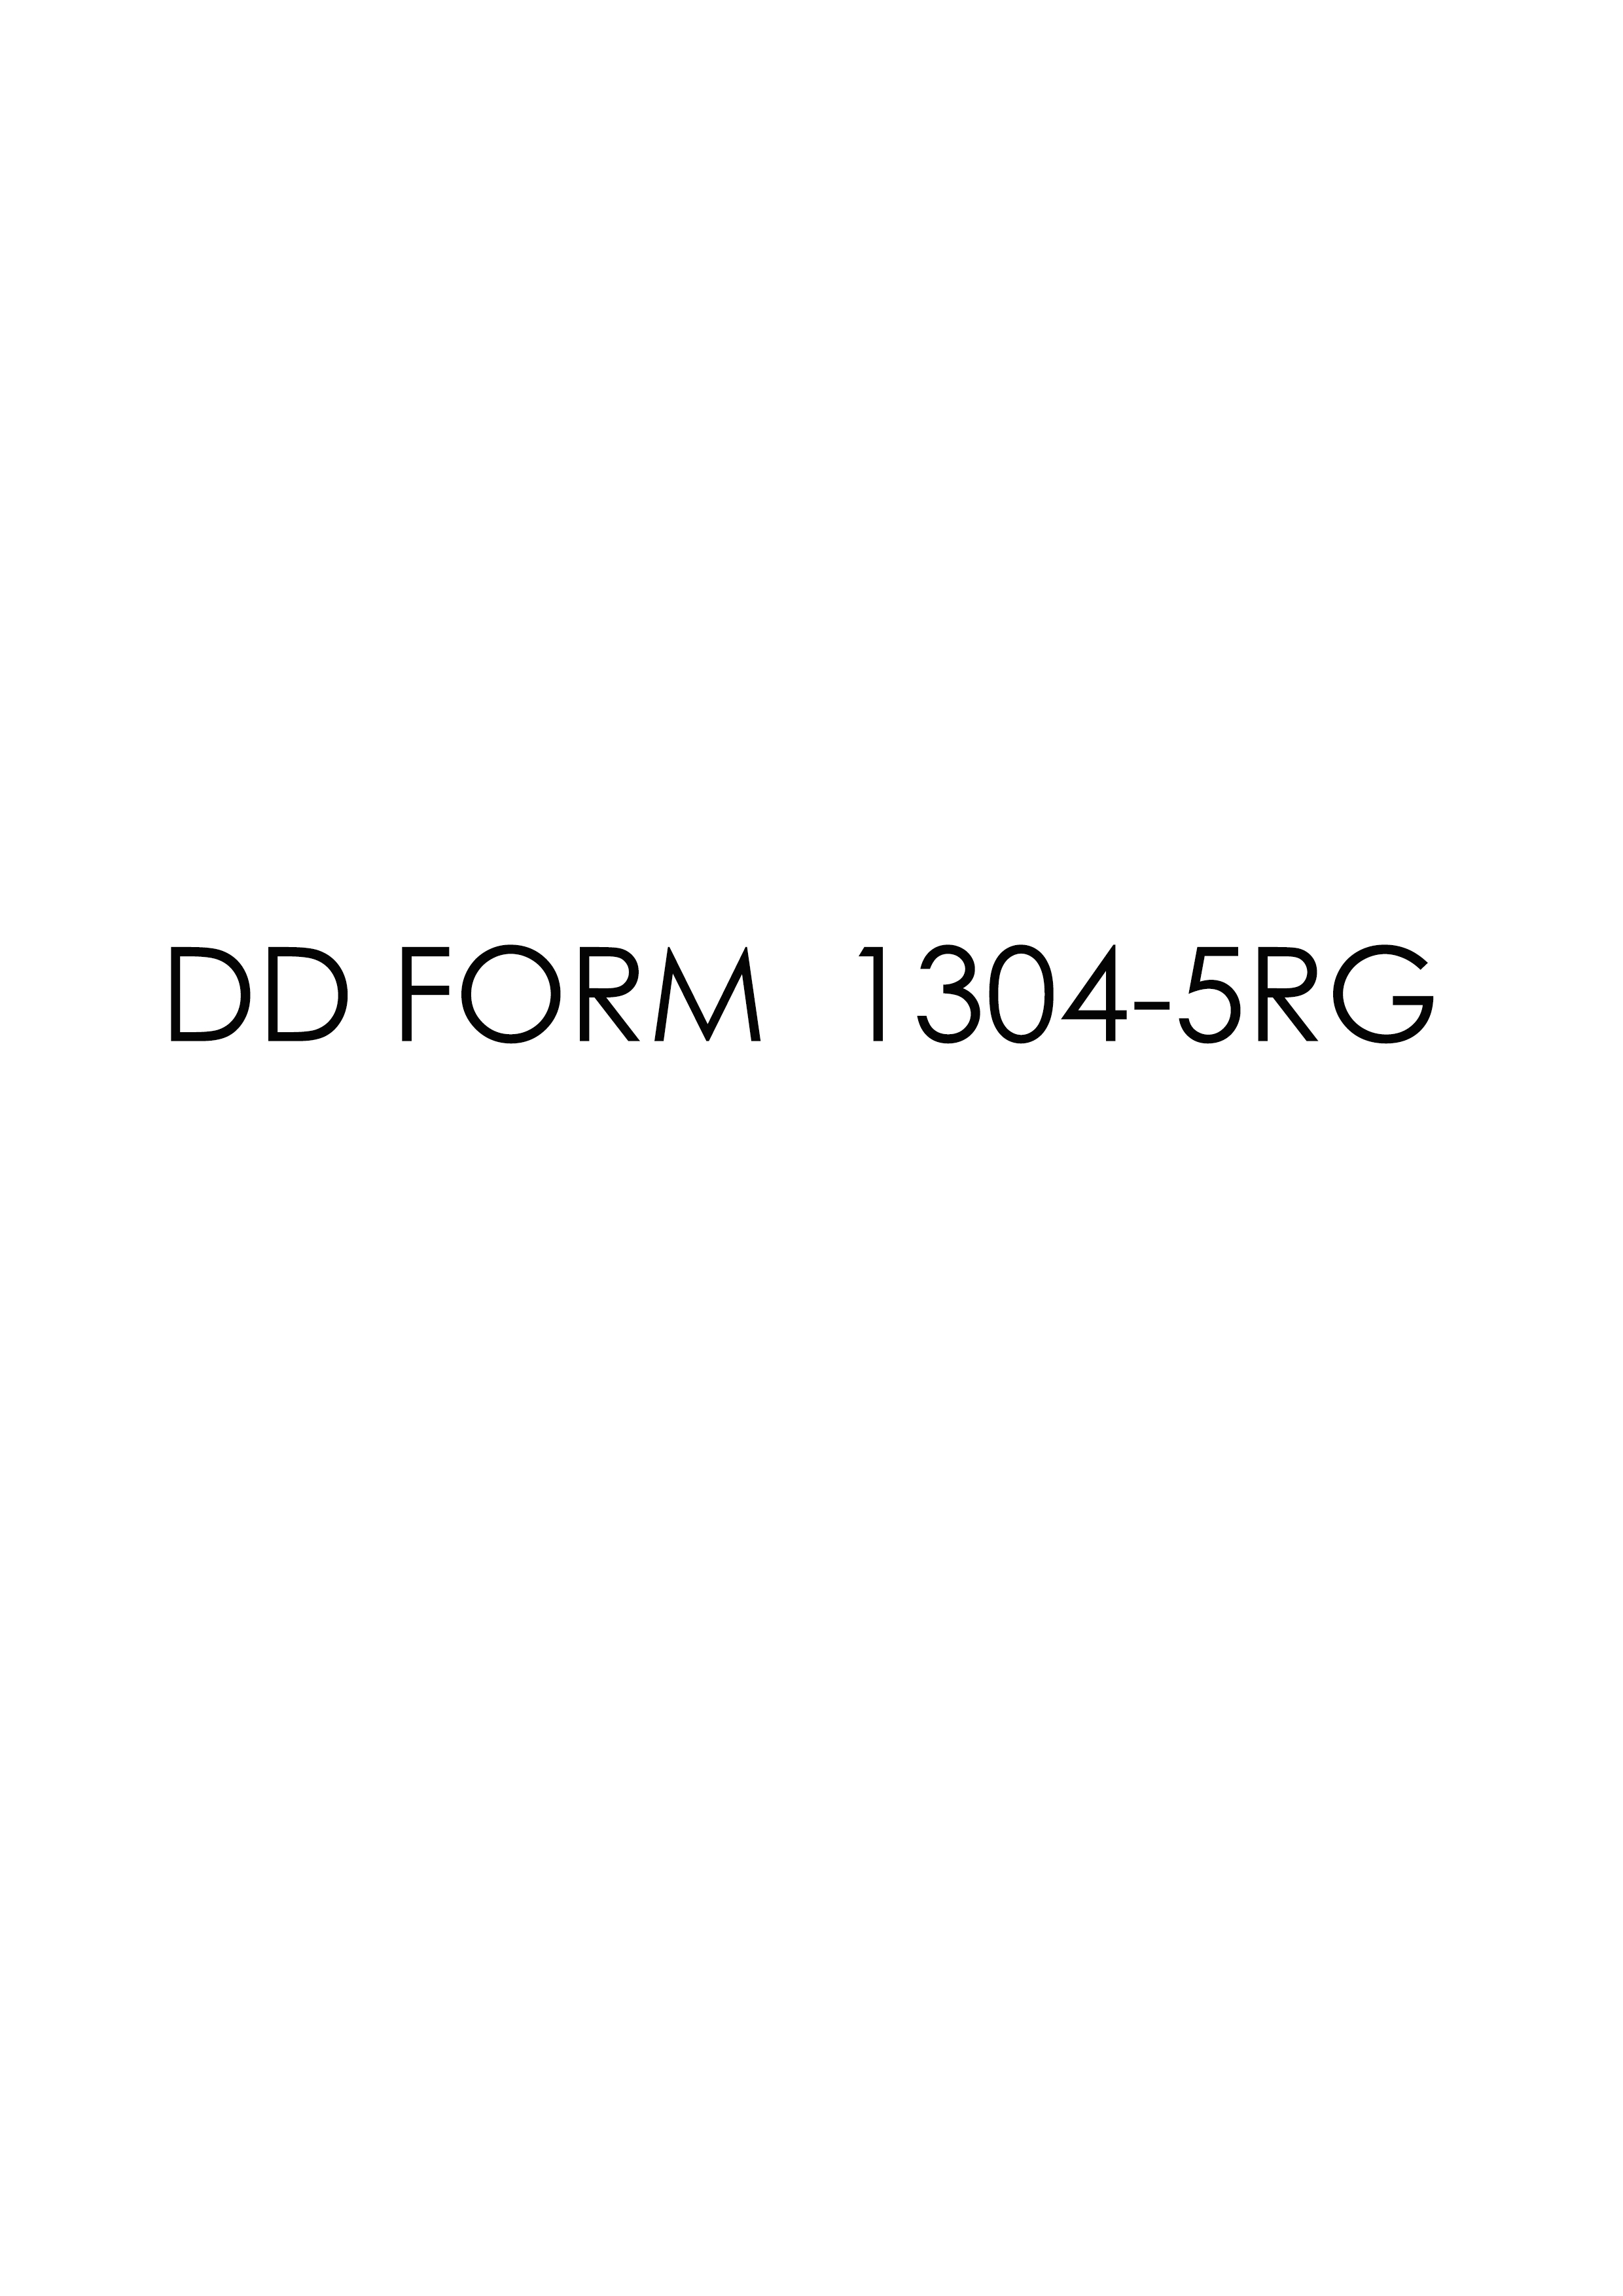 Download dd 1304-5RG Form